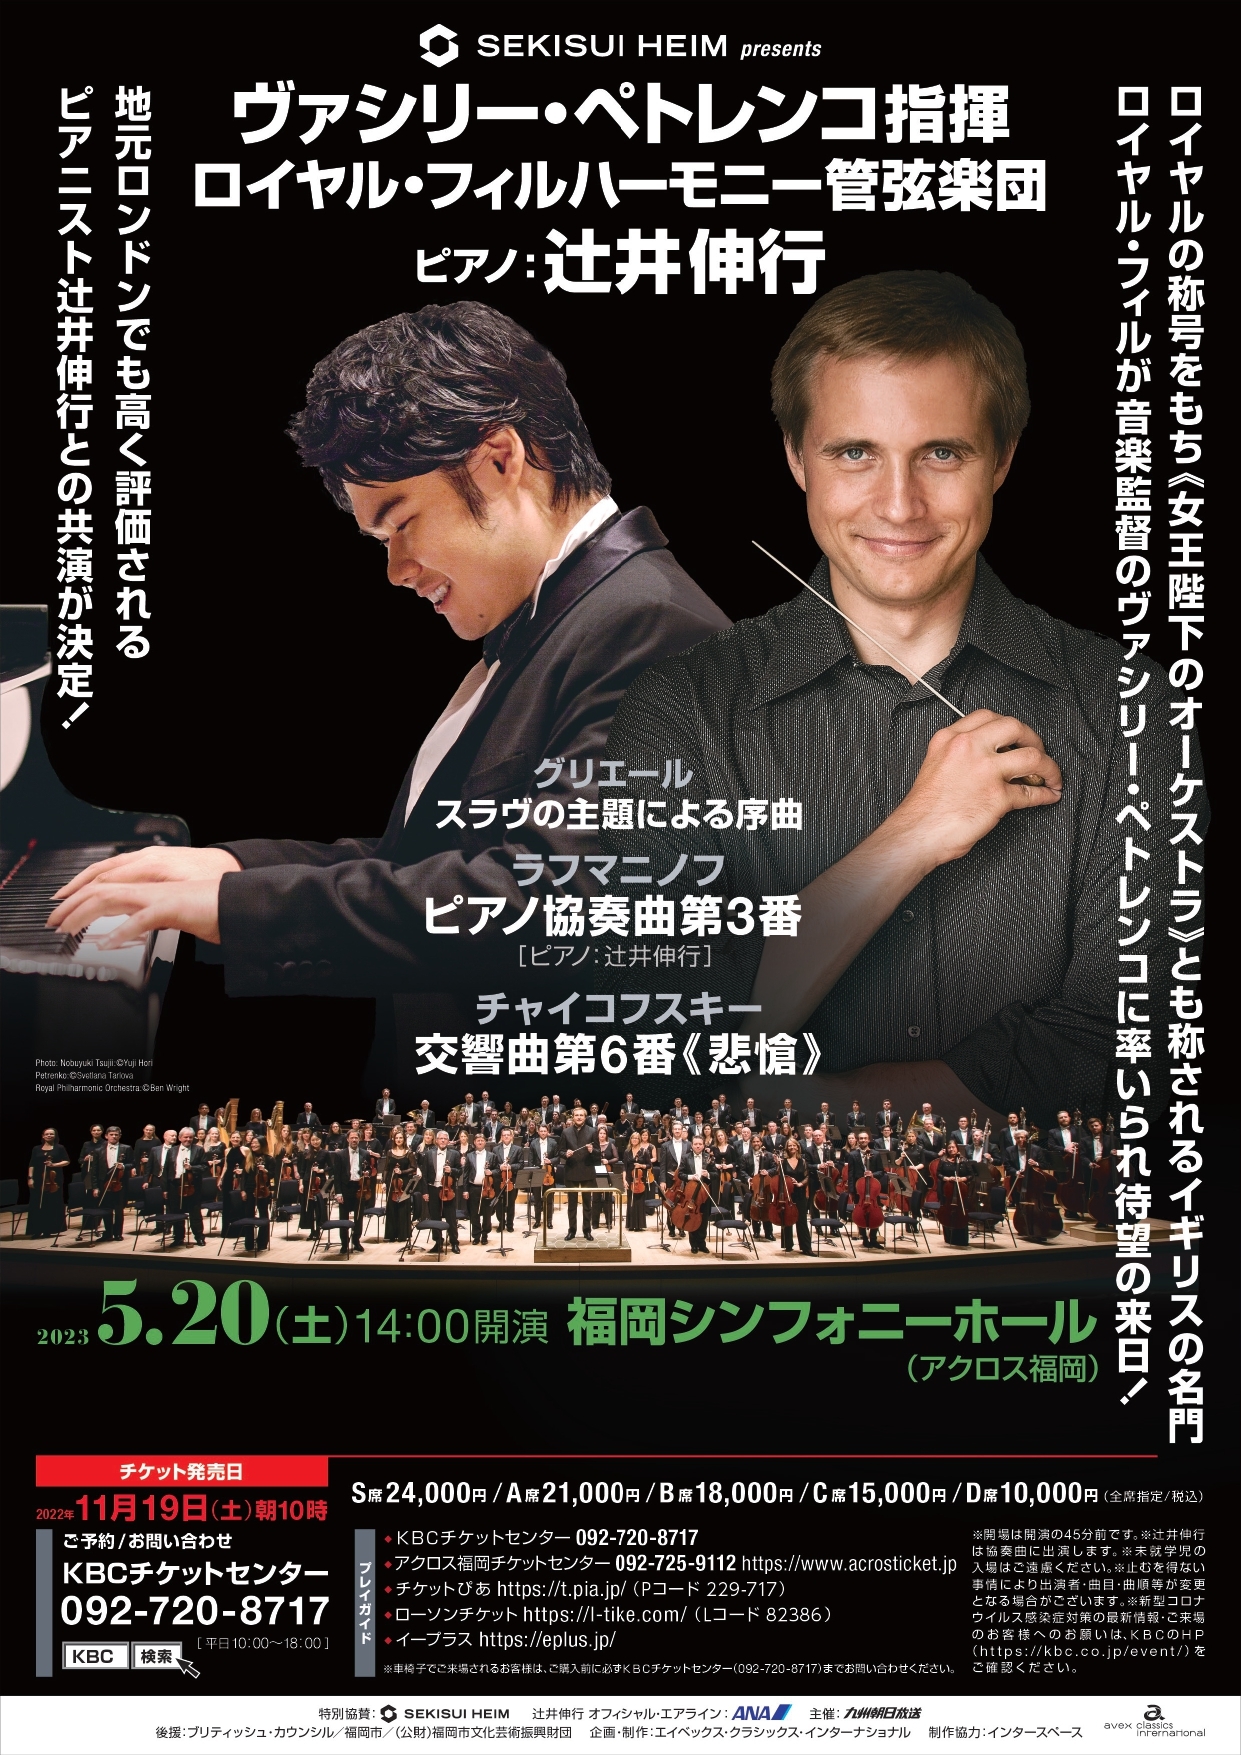 SEKISUI HEIM presentsロイヤル・フィルハーモニー管弦楽団 アクロス福岡